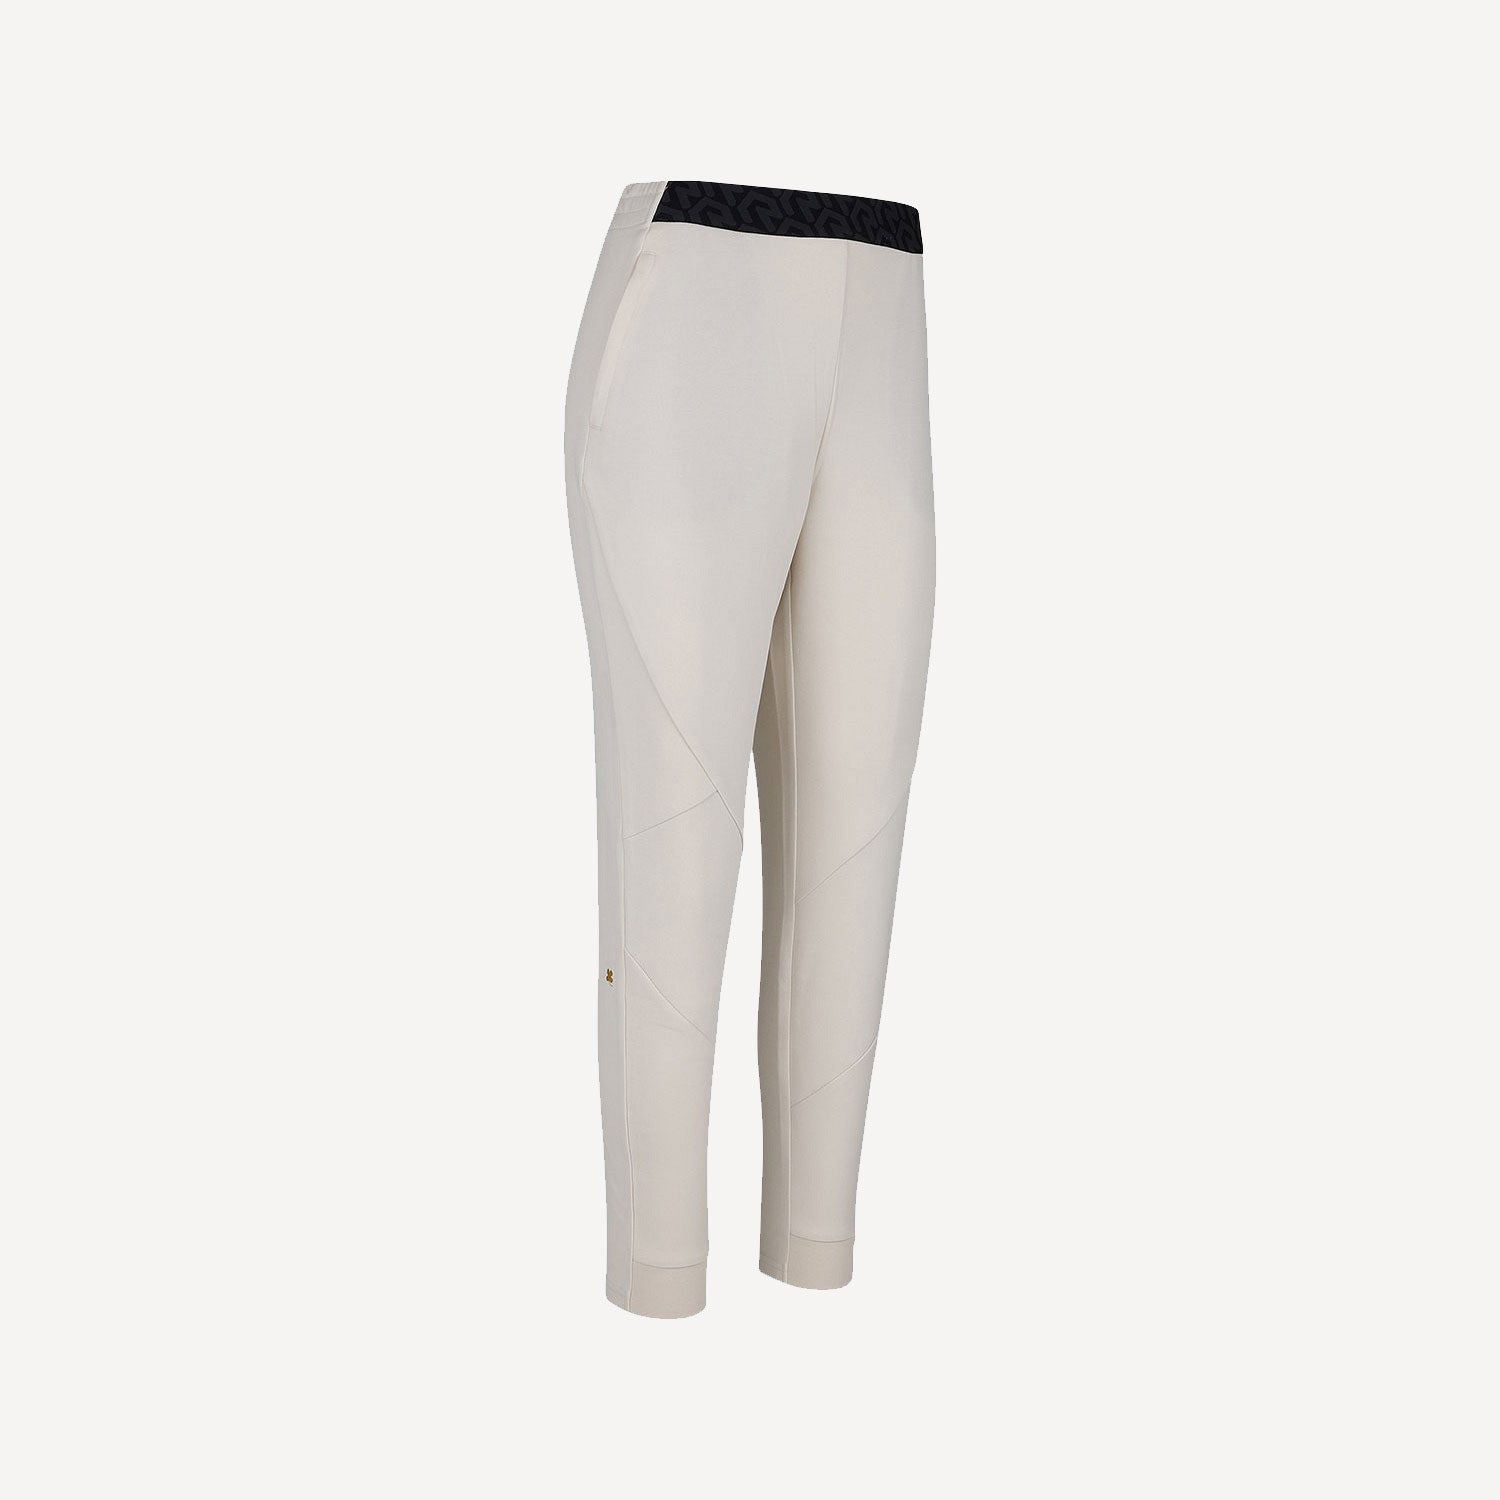 Robey Scuba Women's Cotton Pants - White (3)